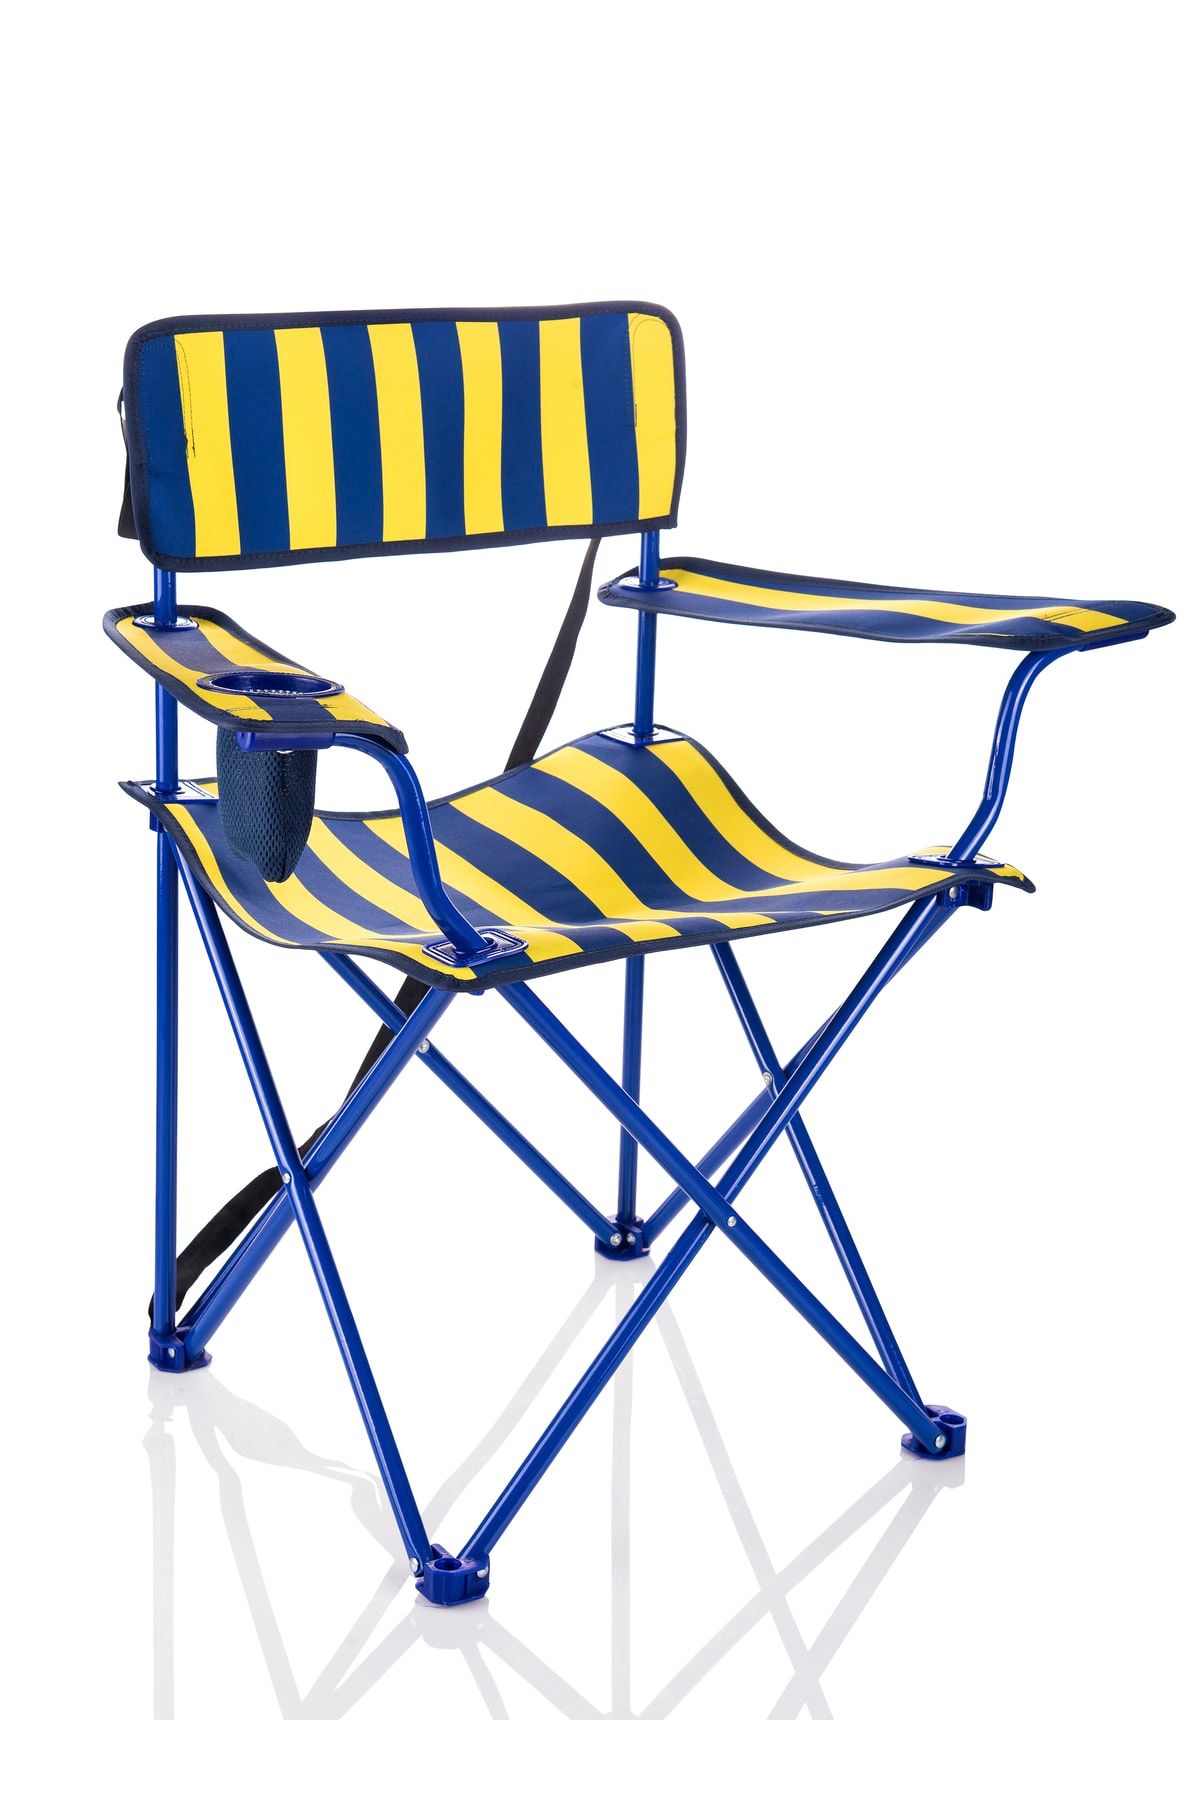 Miras Fans Pro Kamp Sandalyesi , Sarı-lacivert (2 YIL GARANTİ)